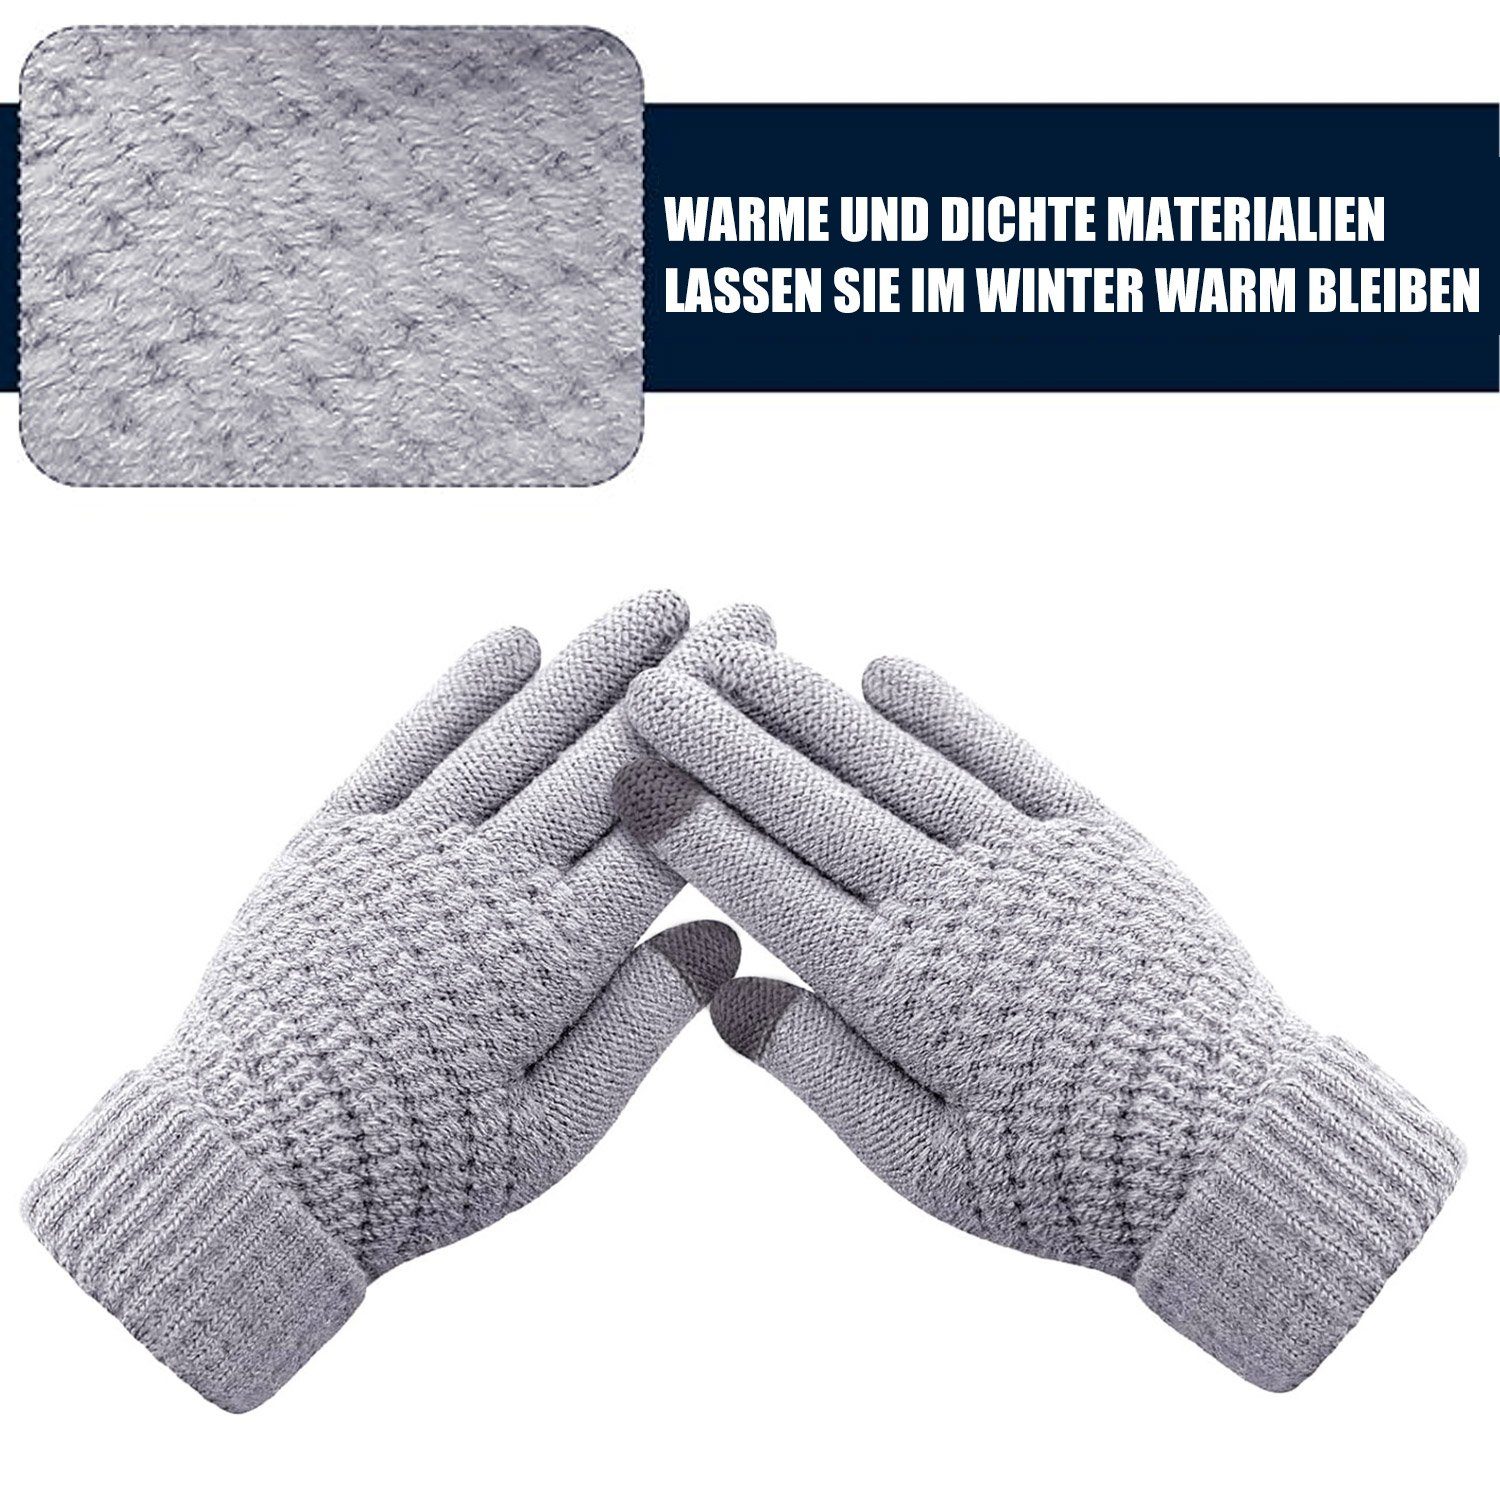 MAGICSHE Fleecehandschuhe Wolle 2 Touchscreen Grau Paar Strickhandschuhe Damen